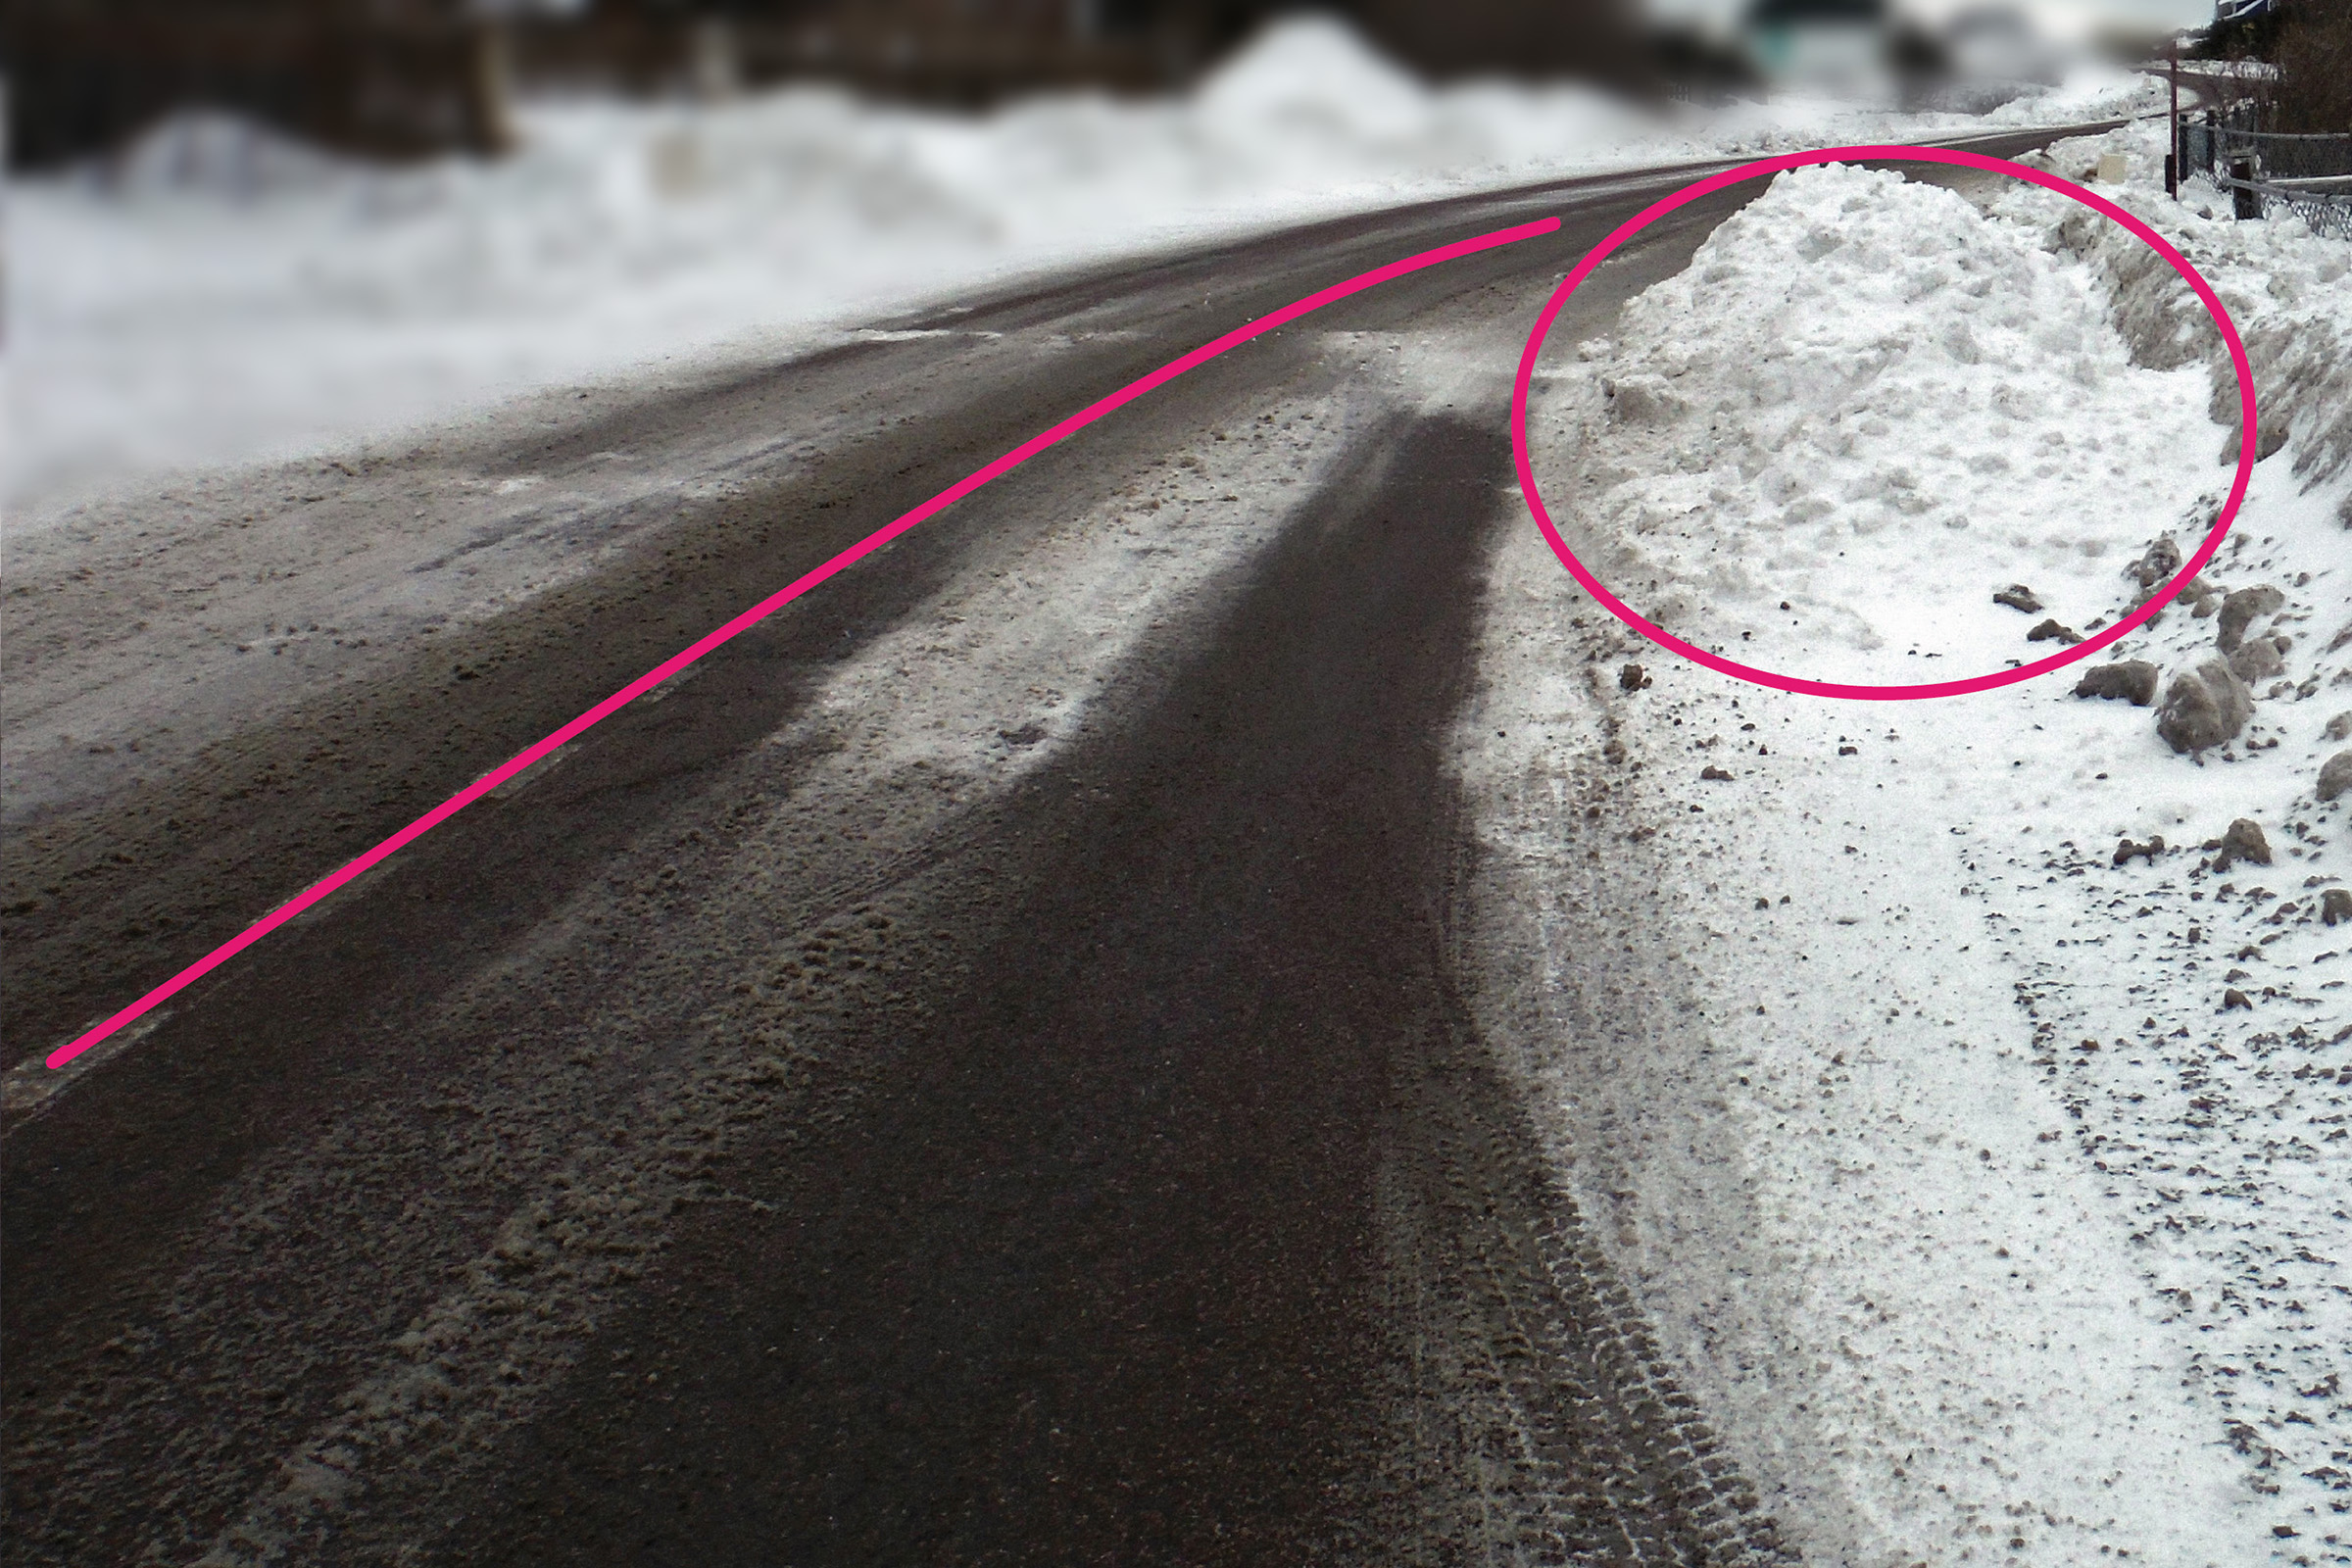 La neige déposée sur le bas côté et sur la chaussée réduit la largeur de la voie et oblige automobilistes et piétons à faire un écart dangereux, particulièrement en courbe.